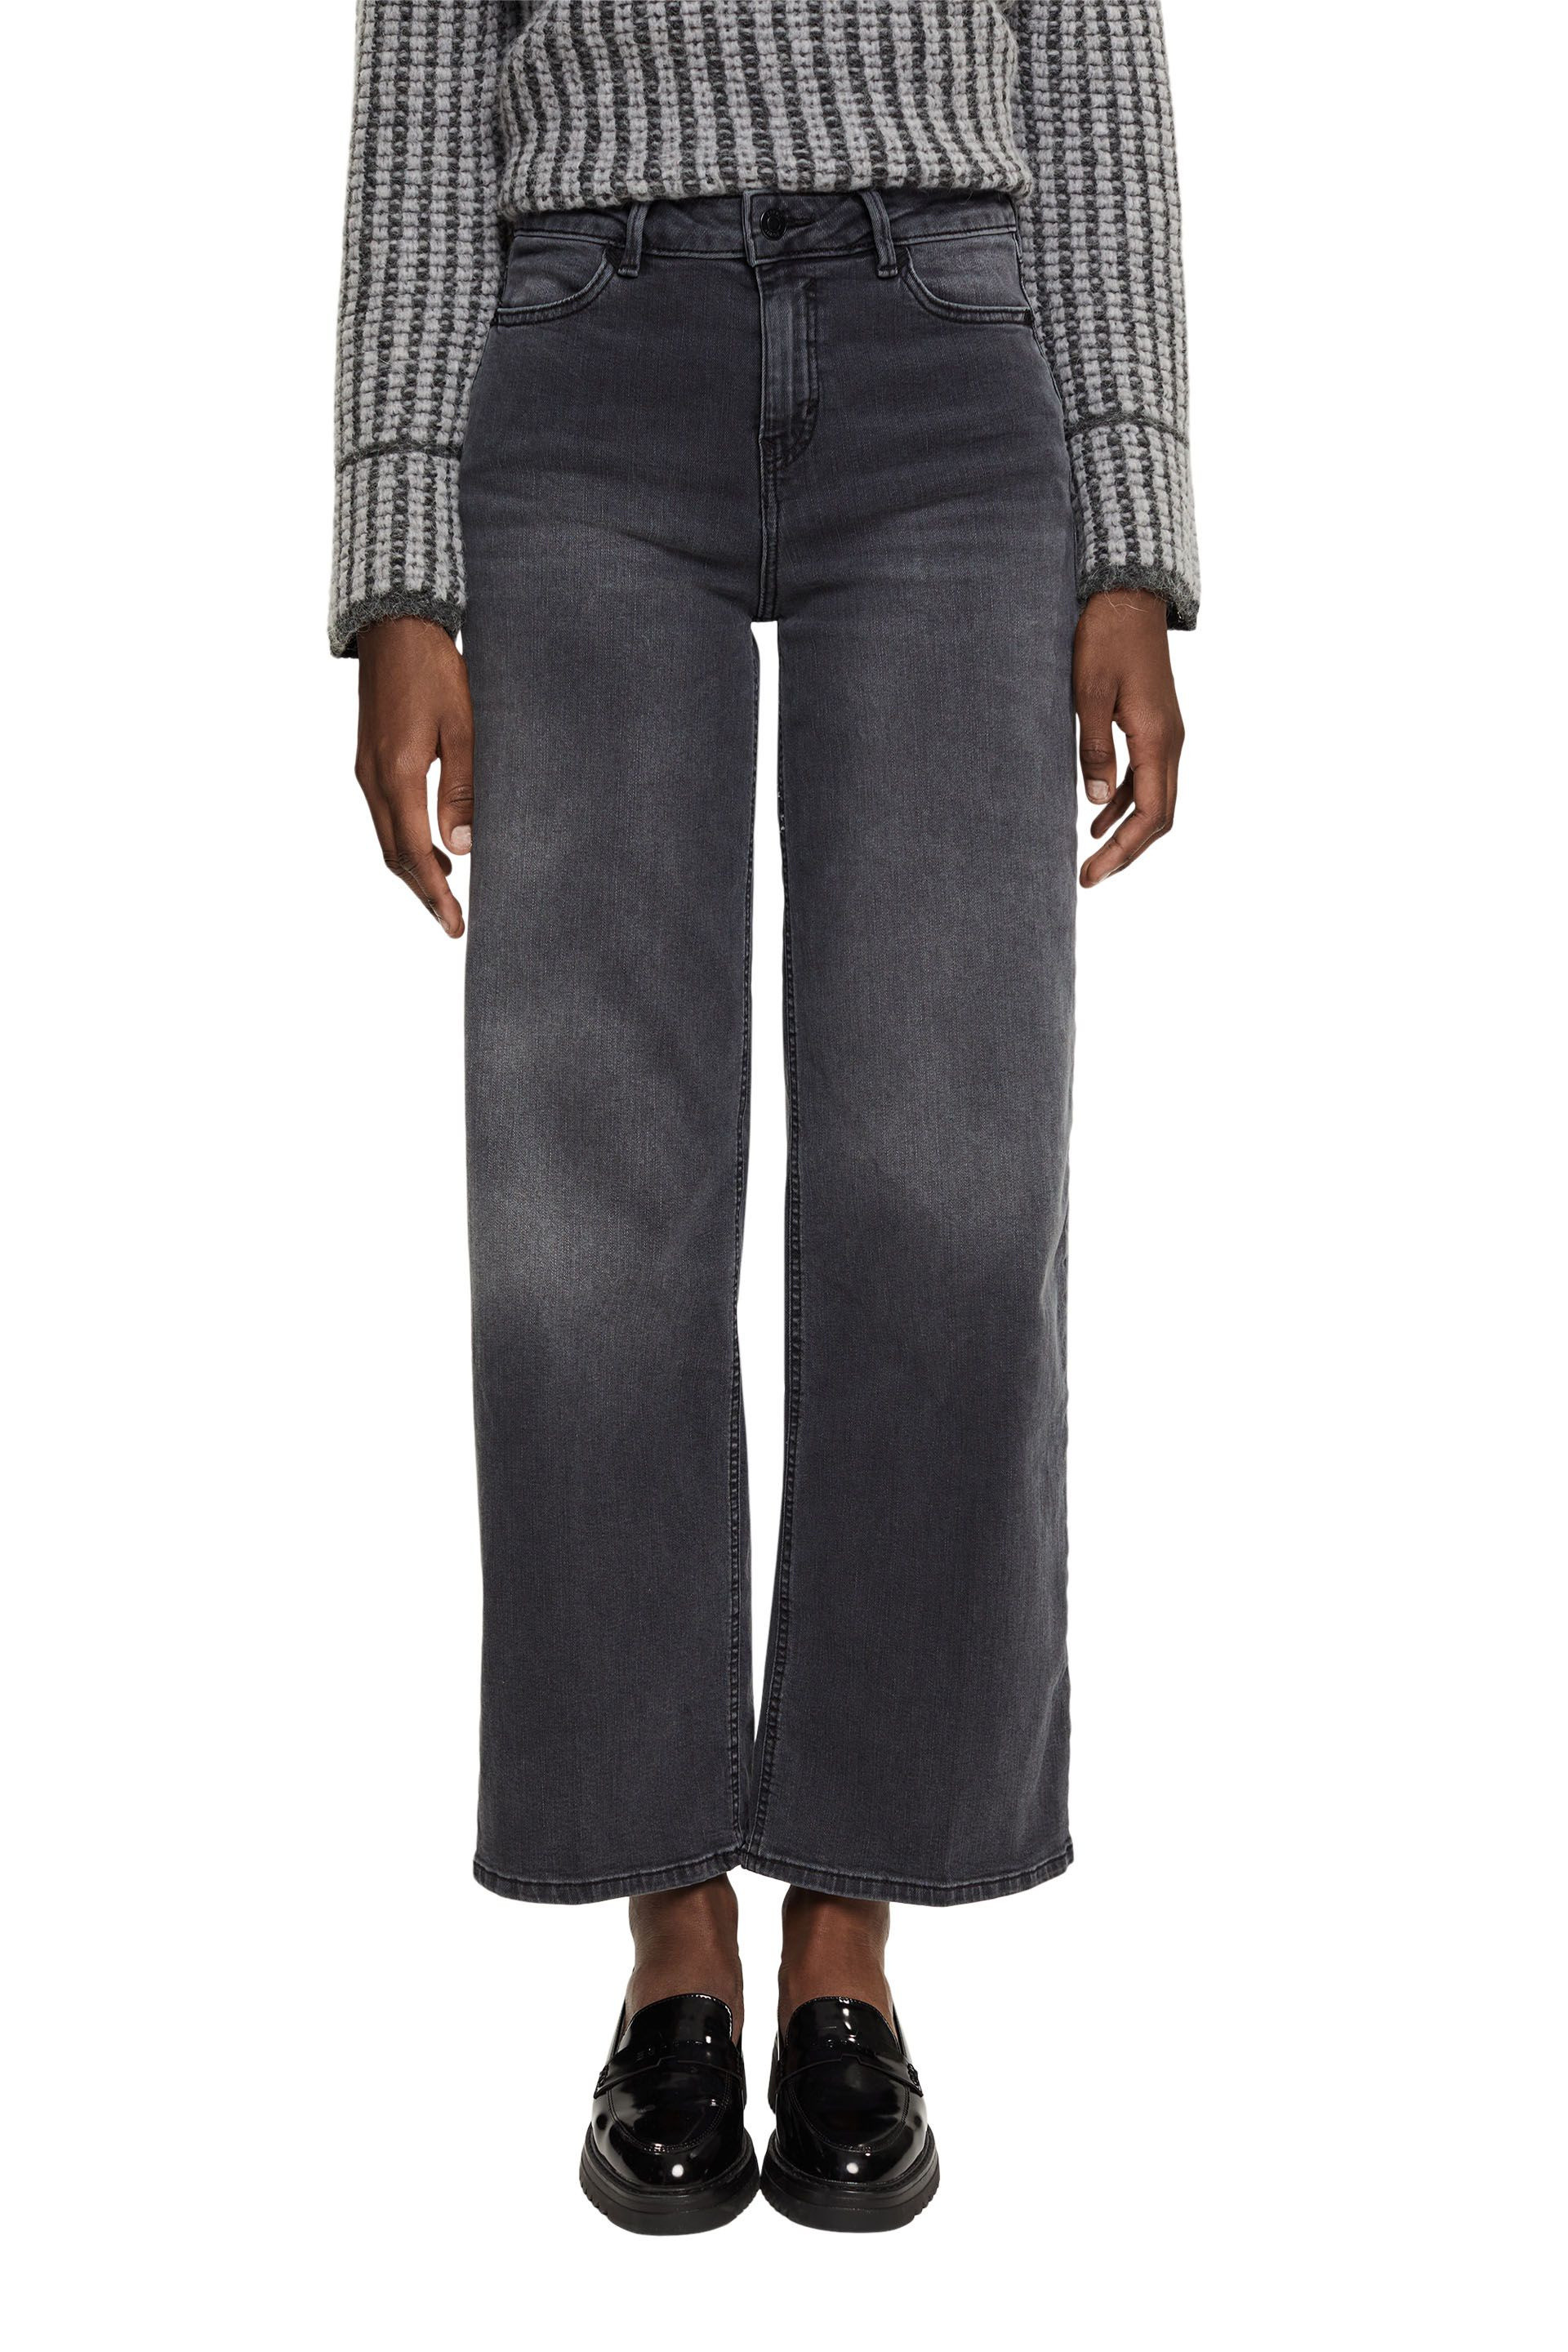 Esprit - Wide leg jeans, Black, large image number 1